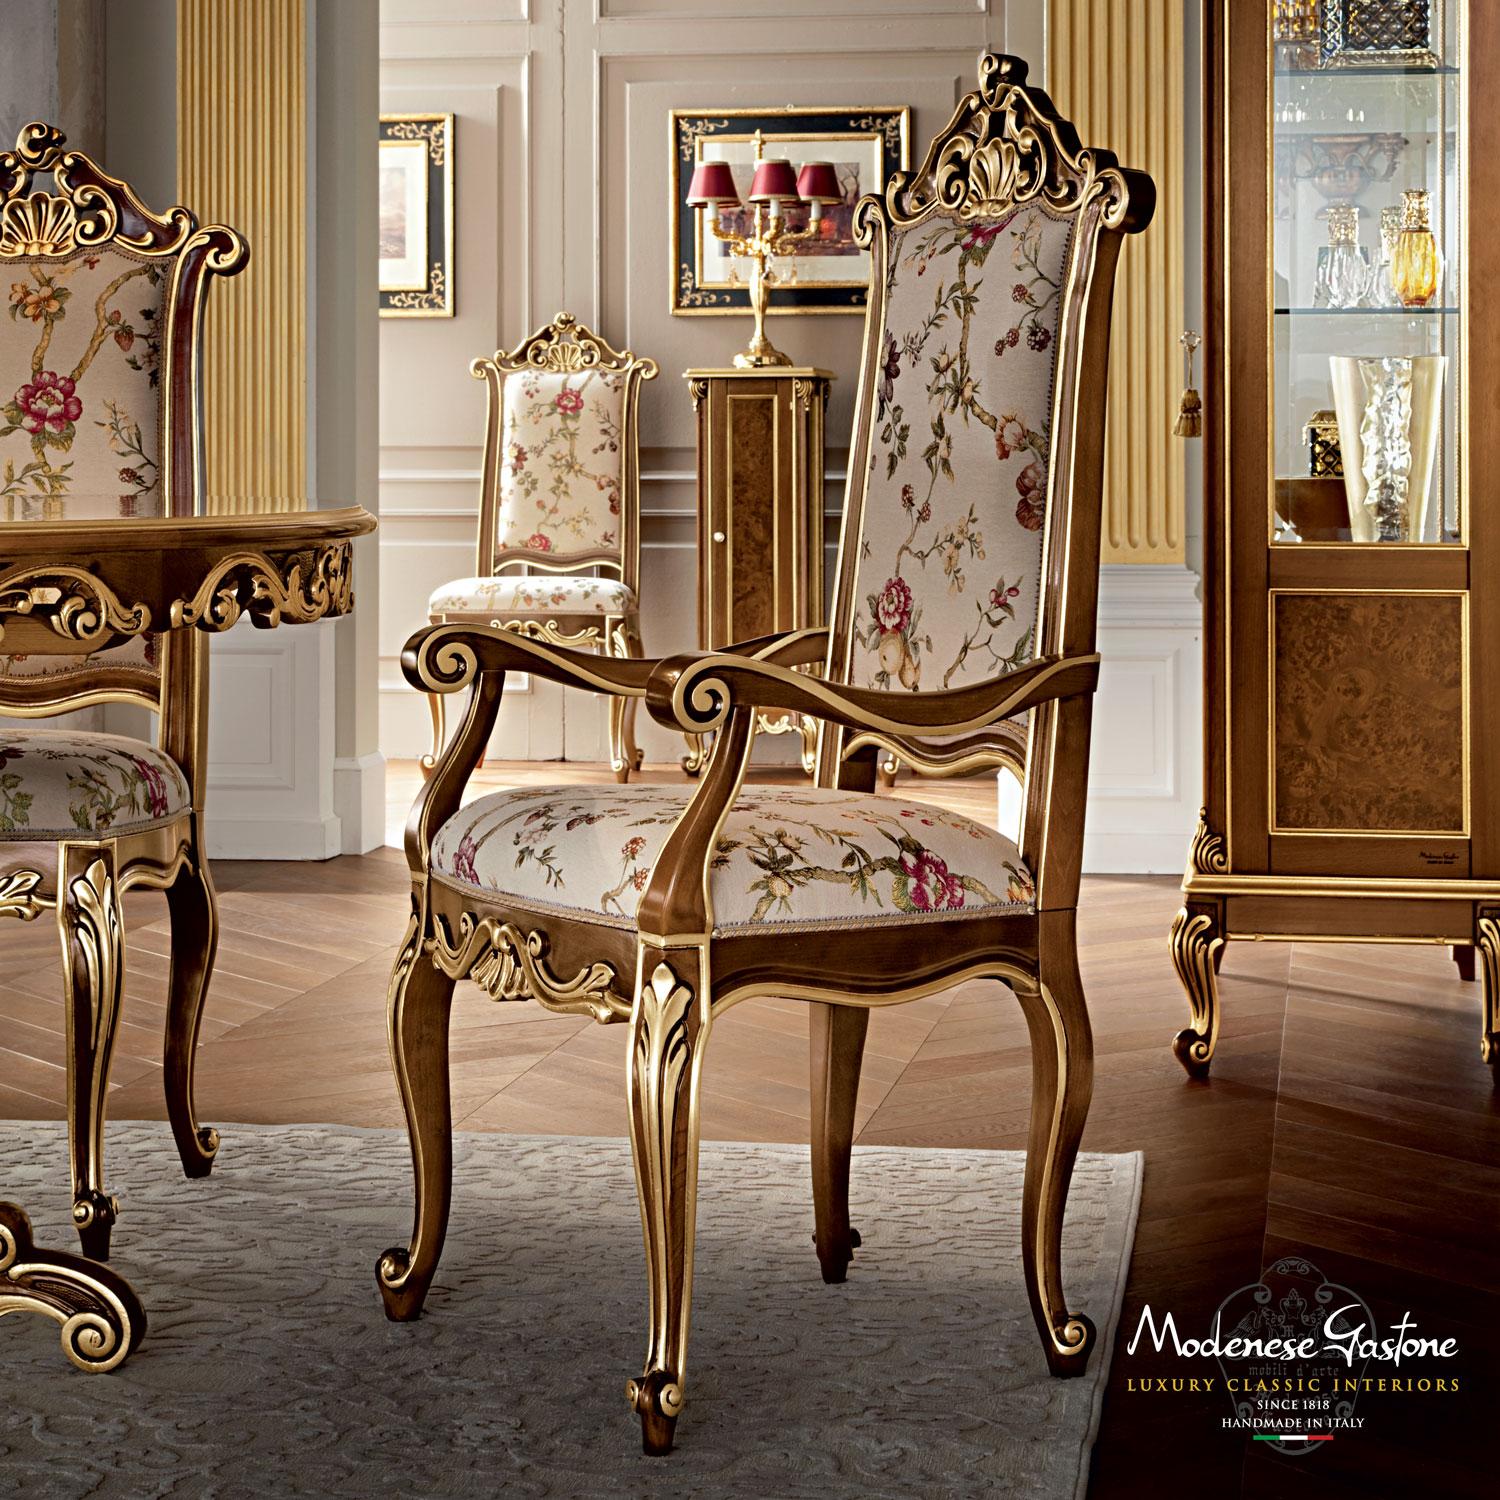 Hochwertige Paläste brauchen hochwertige Möbel, und die Aufgabe von Modenese Gastone Interiors ist es, diesen Zweck zu erfüllen. Dieser majestätische, glänzende Esszimmerstuhl hat ein dunkles Wlanut-Finish mit Blattgoldapplikationen entlang der